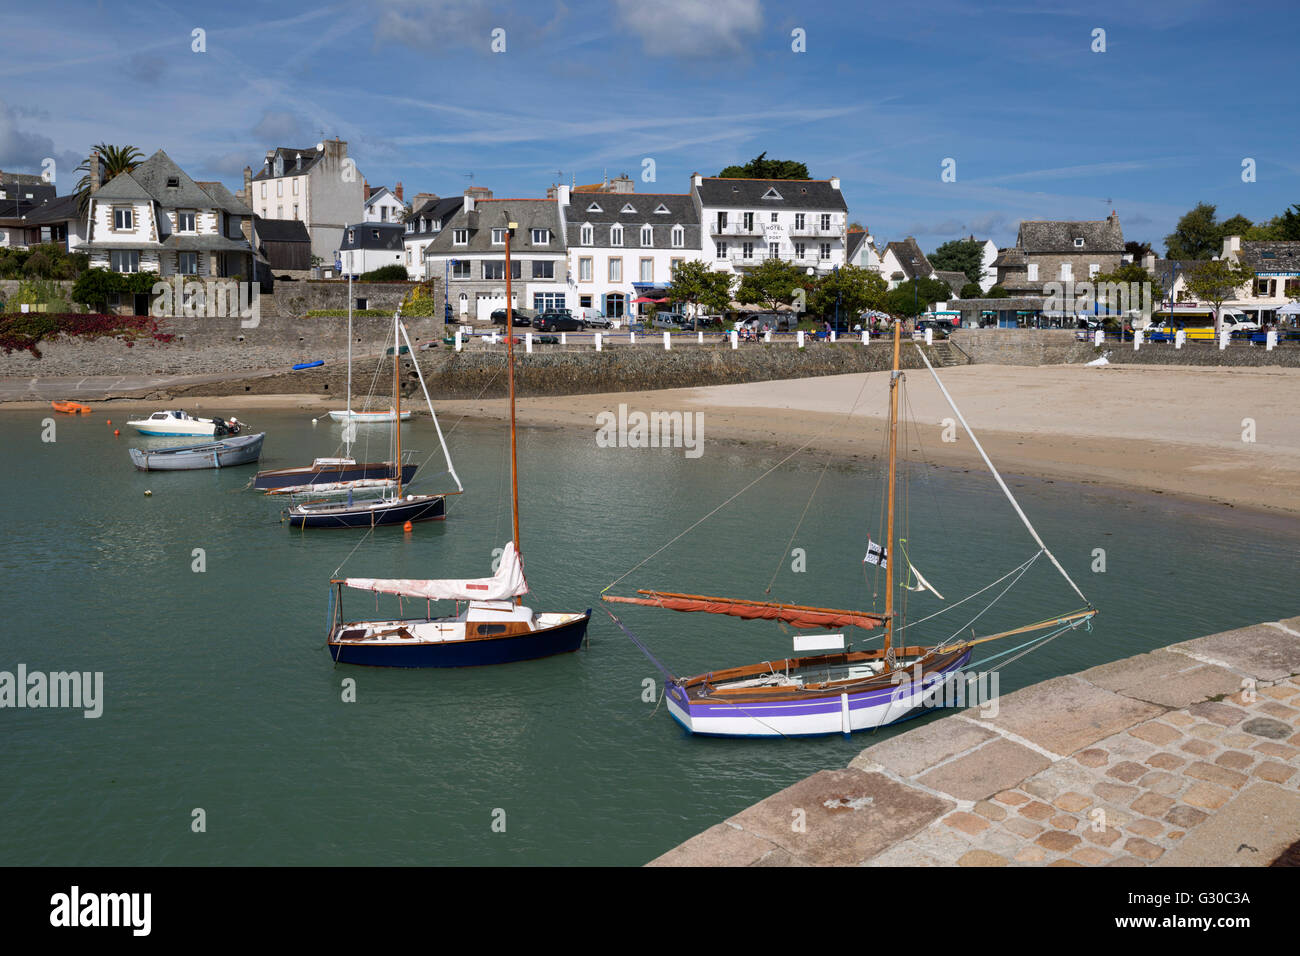 Vue sur la plage et les bateaux dans le port, Locquirec, Finistère, Bretagne, France, Europe Banque D'Images